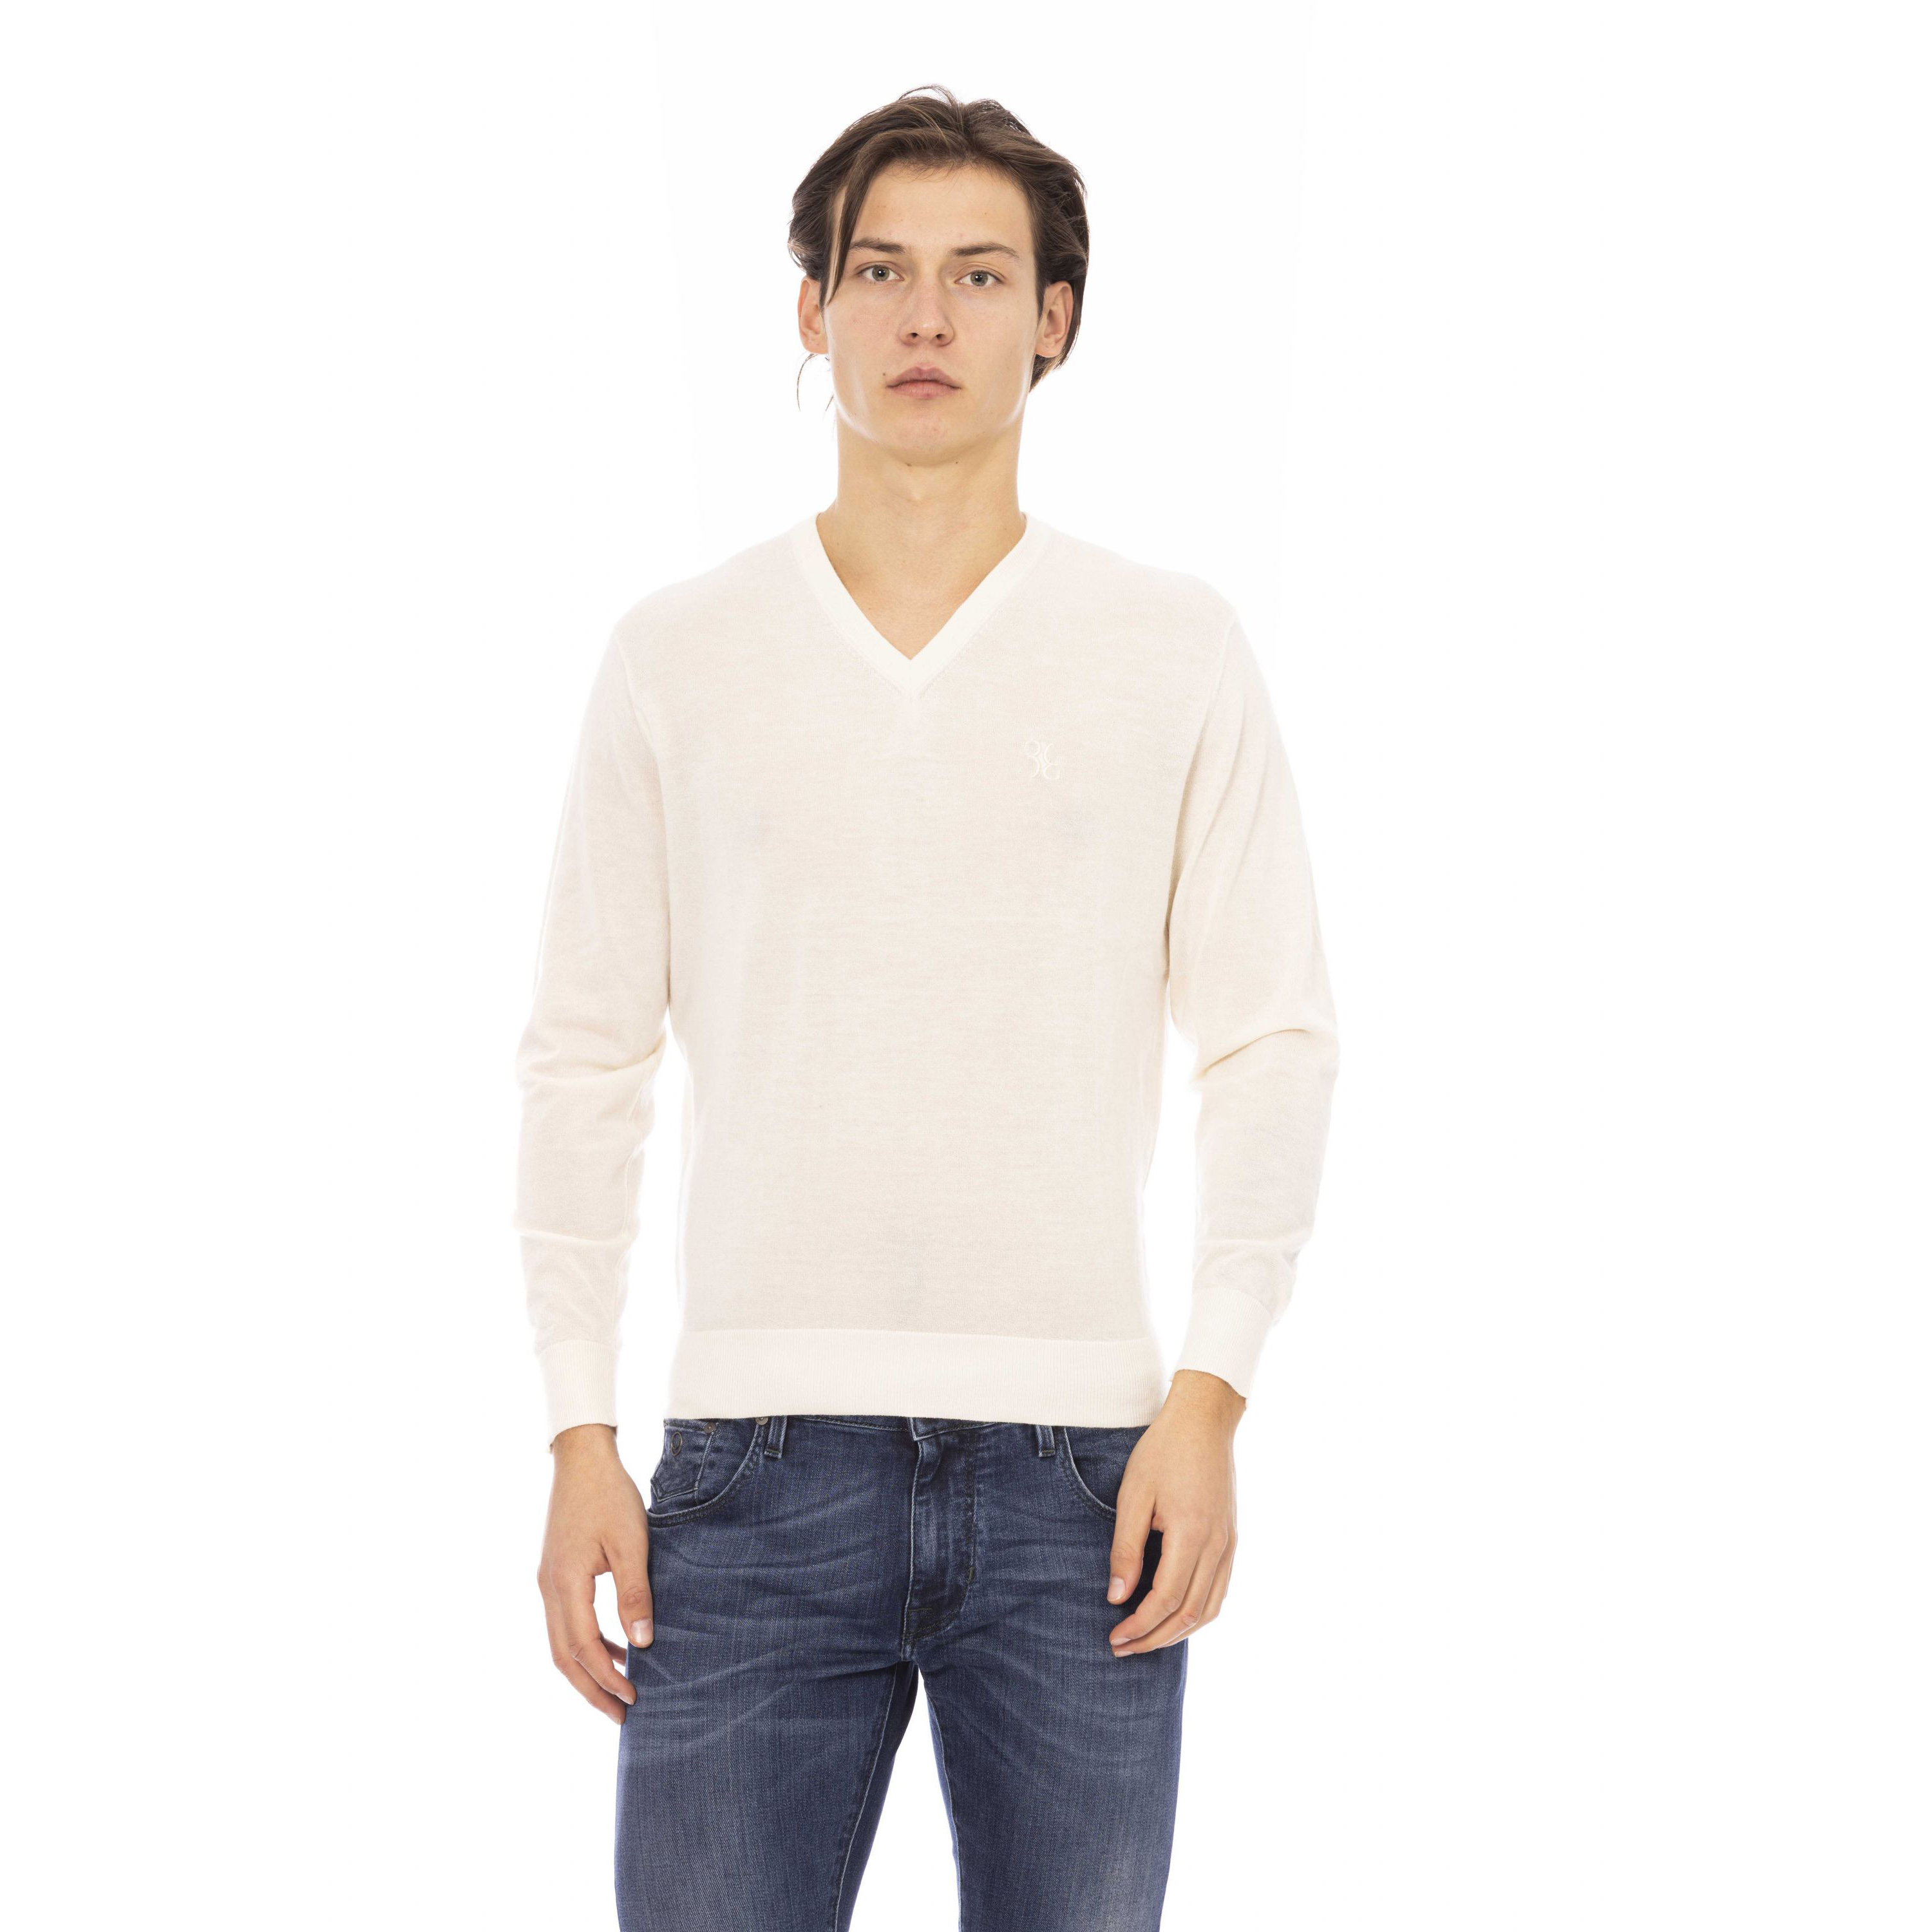 Пуловер Billionaire V Neck Sweater, молочный женский пуловер с вышивкой и v образным вырезом